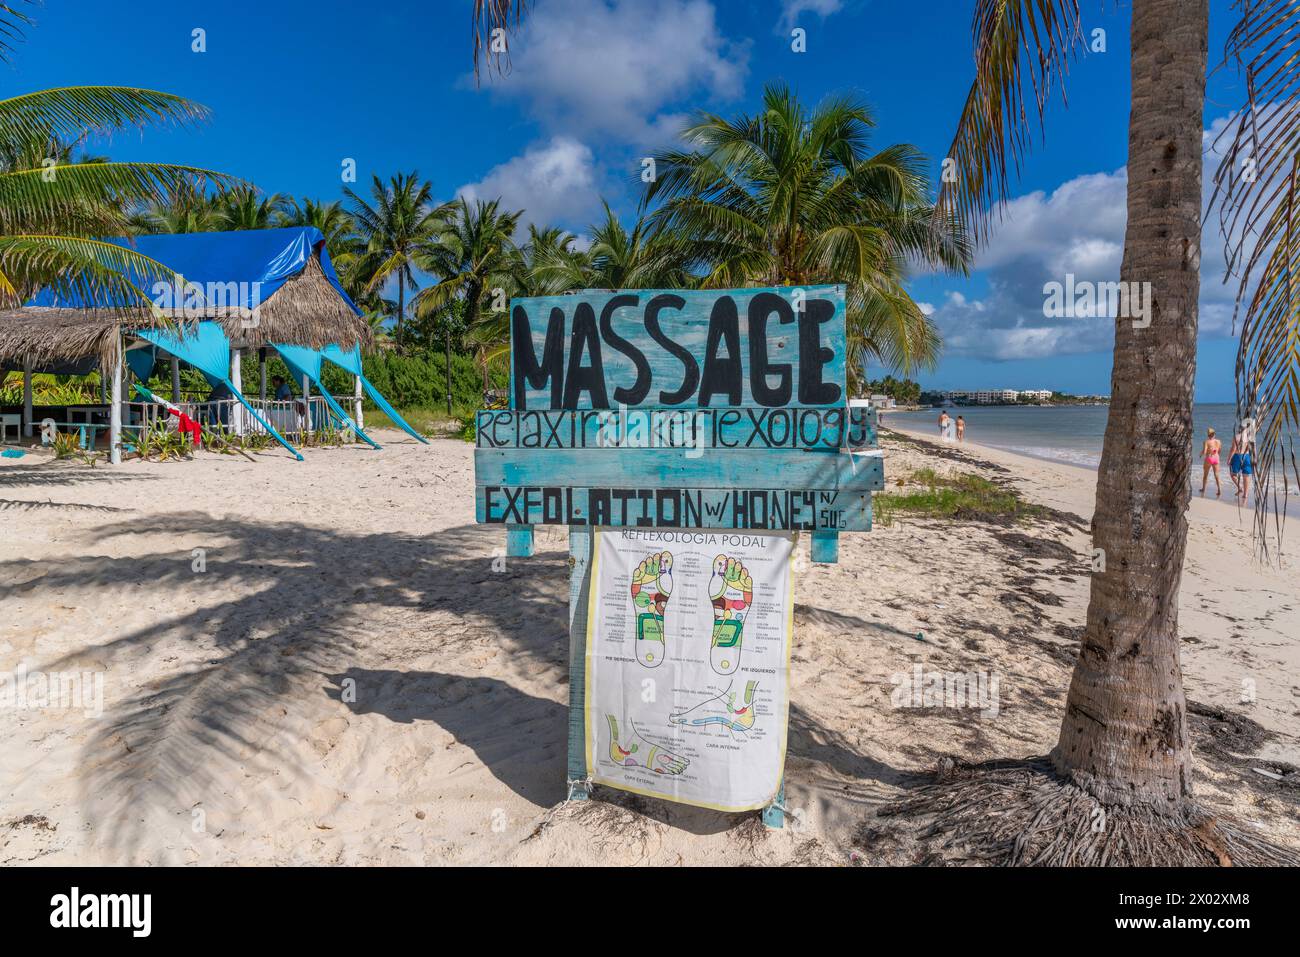 Vista dell'insegna del massaggio rustico sulla spiaggia vicino a Puerto Morelos, costa caraibica, penisola dello Yucatan, Messico, Nord America Foto Stock